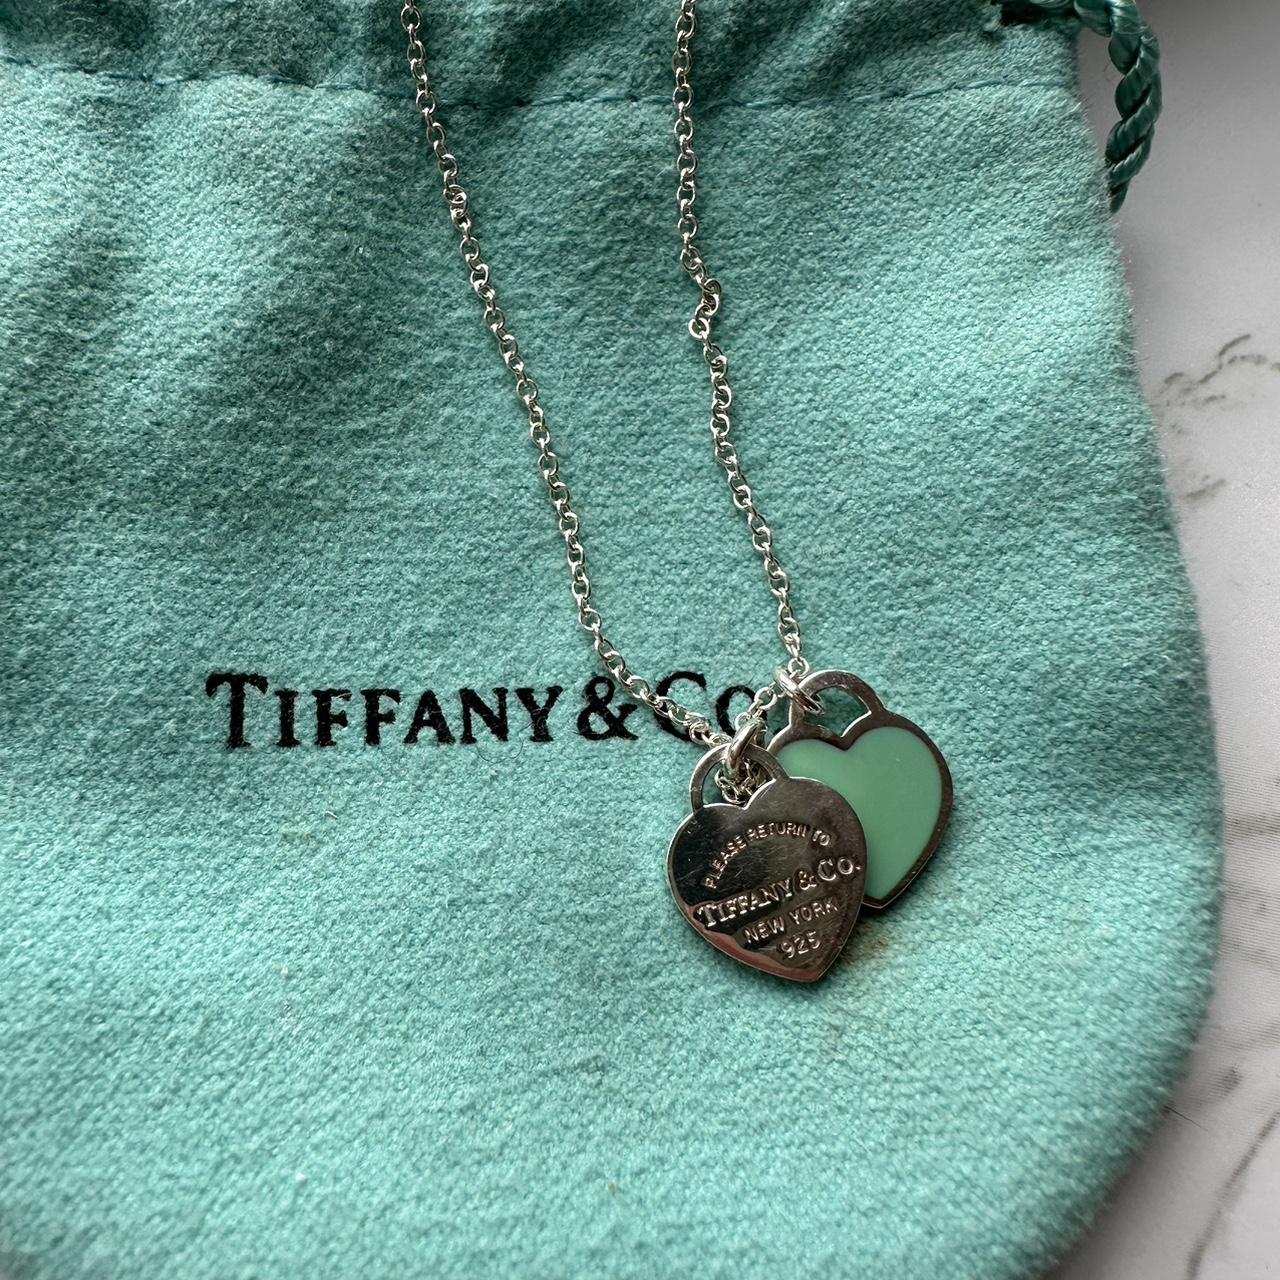 Tiffany & Co. Women's Silver and Blue Jewellery | Depop